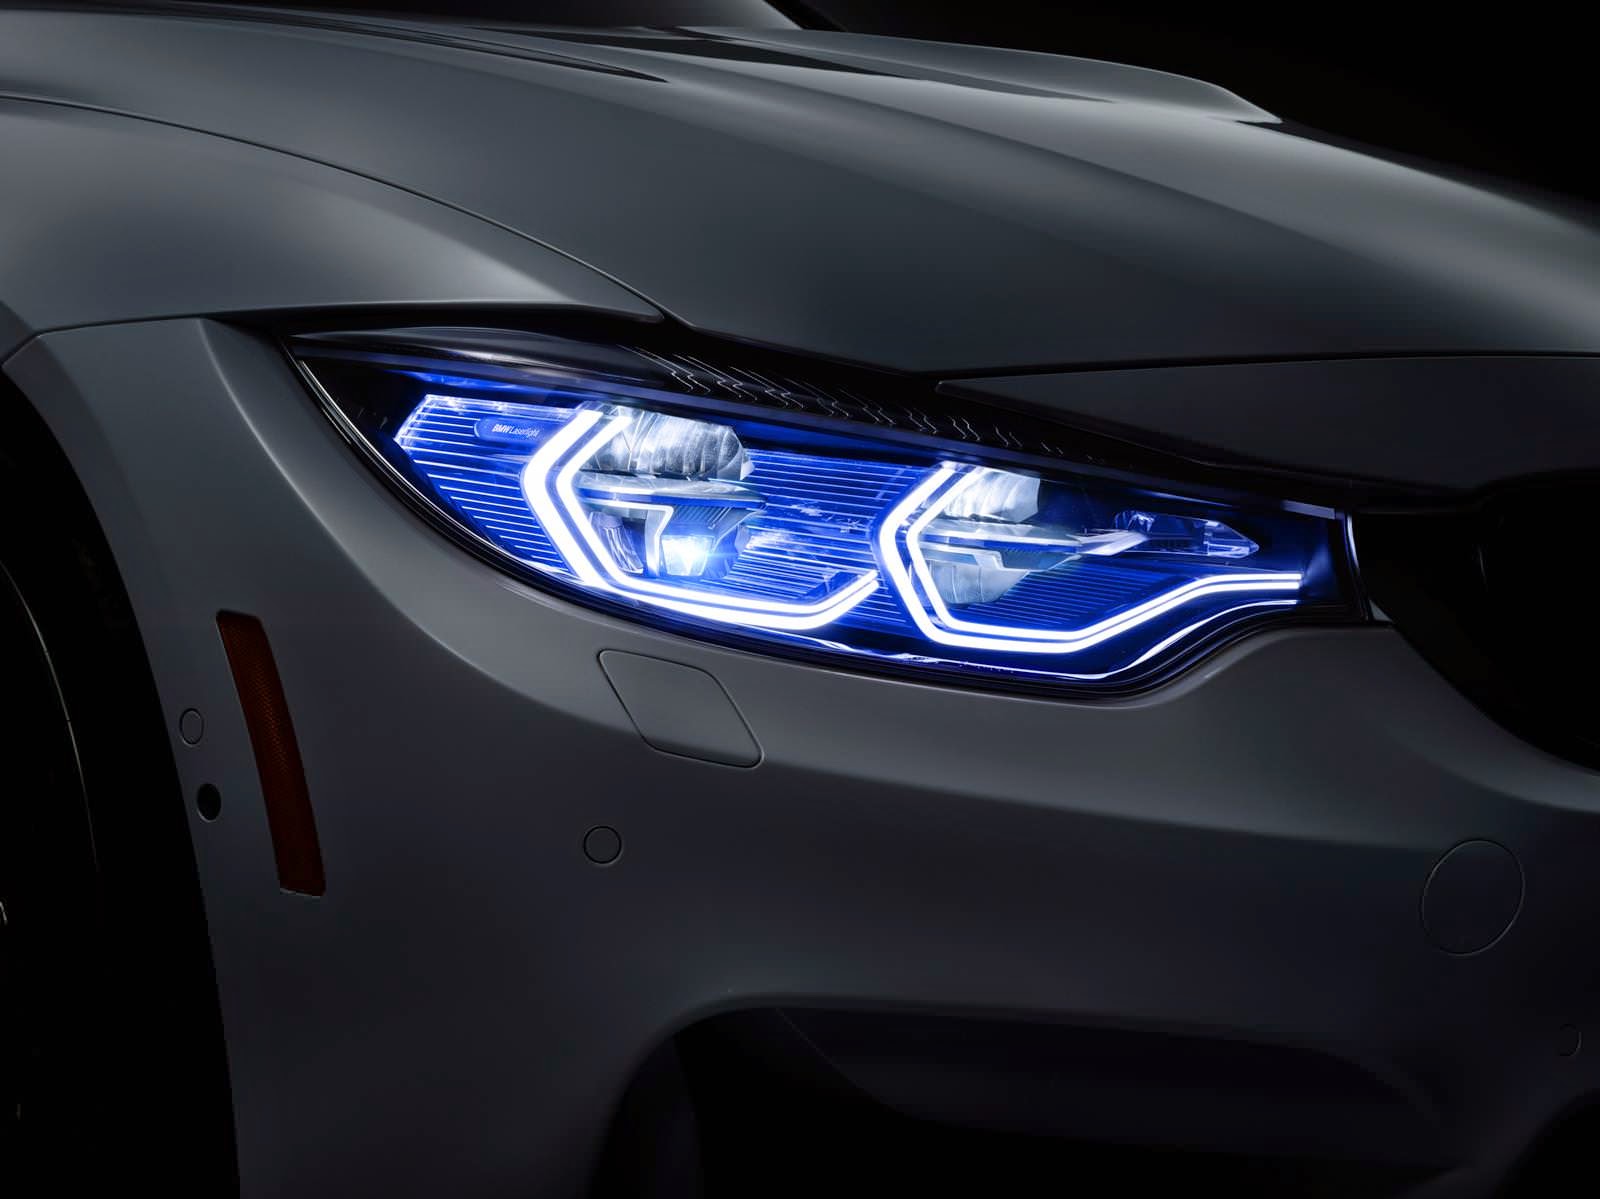 BMW M4 Concept Iconic Lights صور سيارات: سيارة بي ام دبليو ام 4 كونسبت ايكونيك لايتس 2015 بمعرض 'CES' 